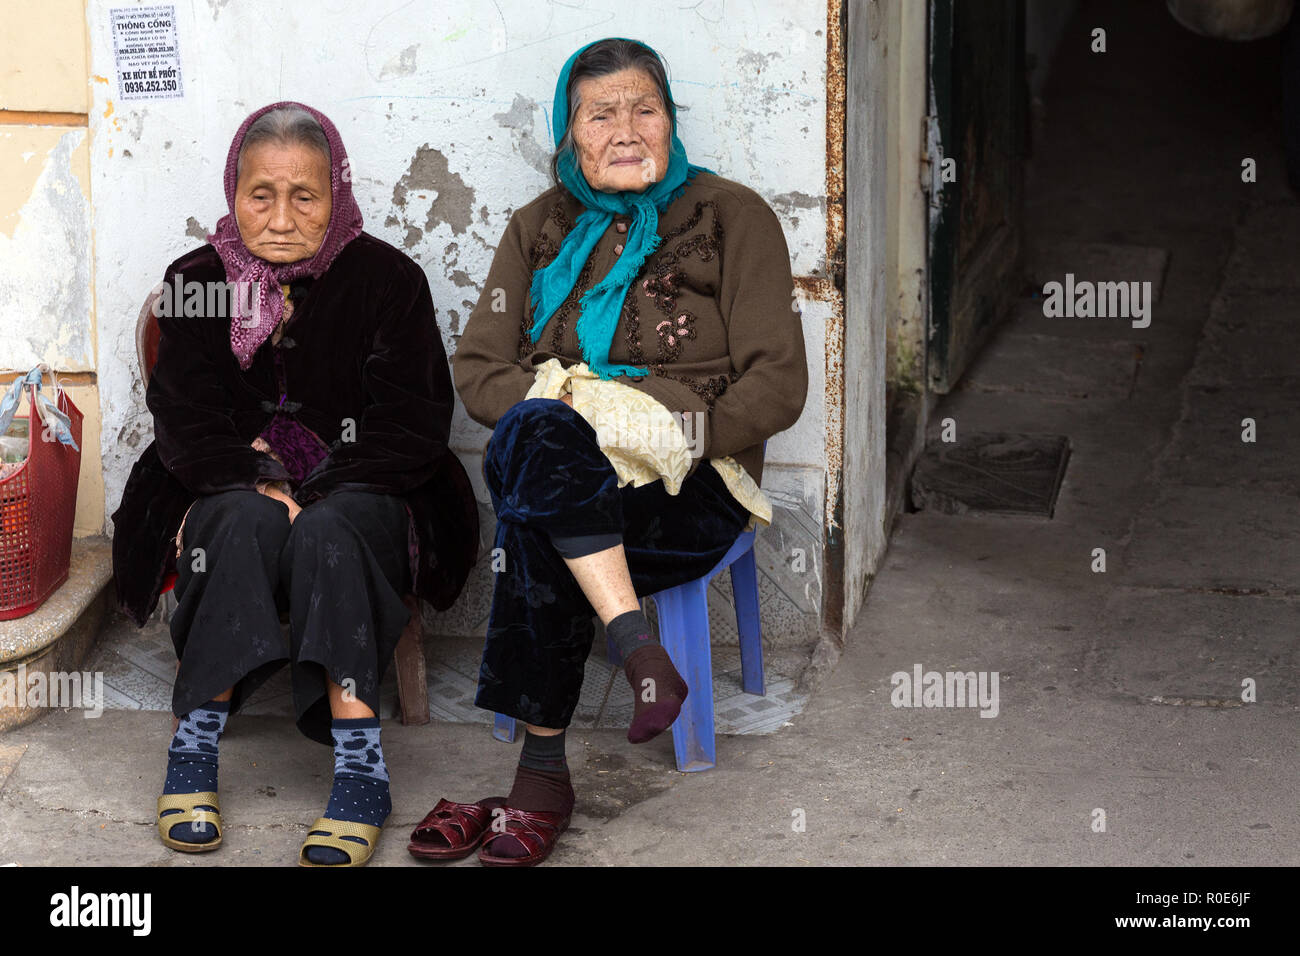 HANOI, VIETNAM, DECEMBER 15, 2014 : Two elderly women are sitting along the street watching the urban life around in Hanoi, Vietnam Stock Photo